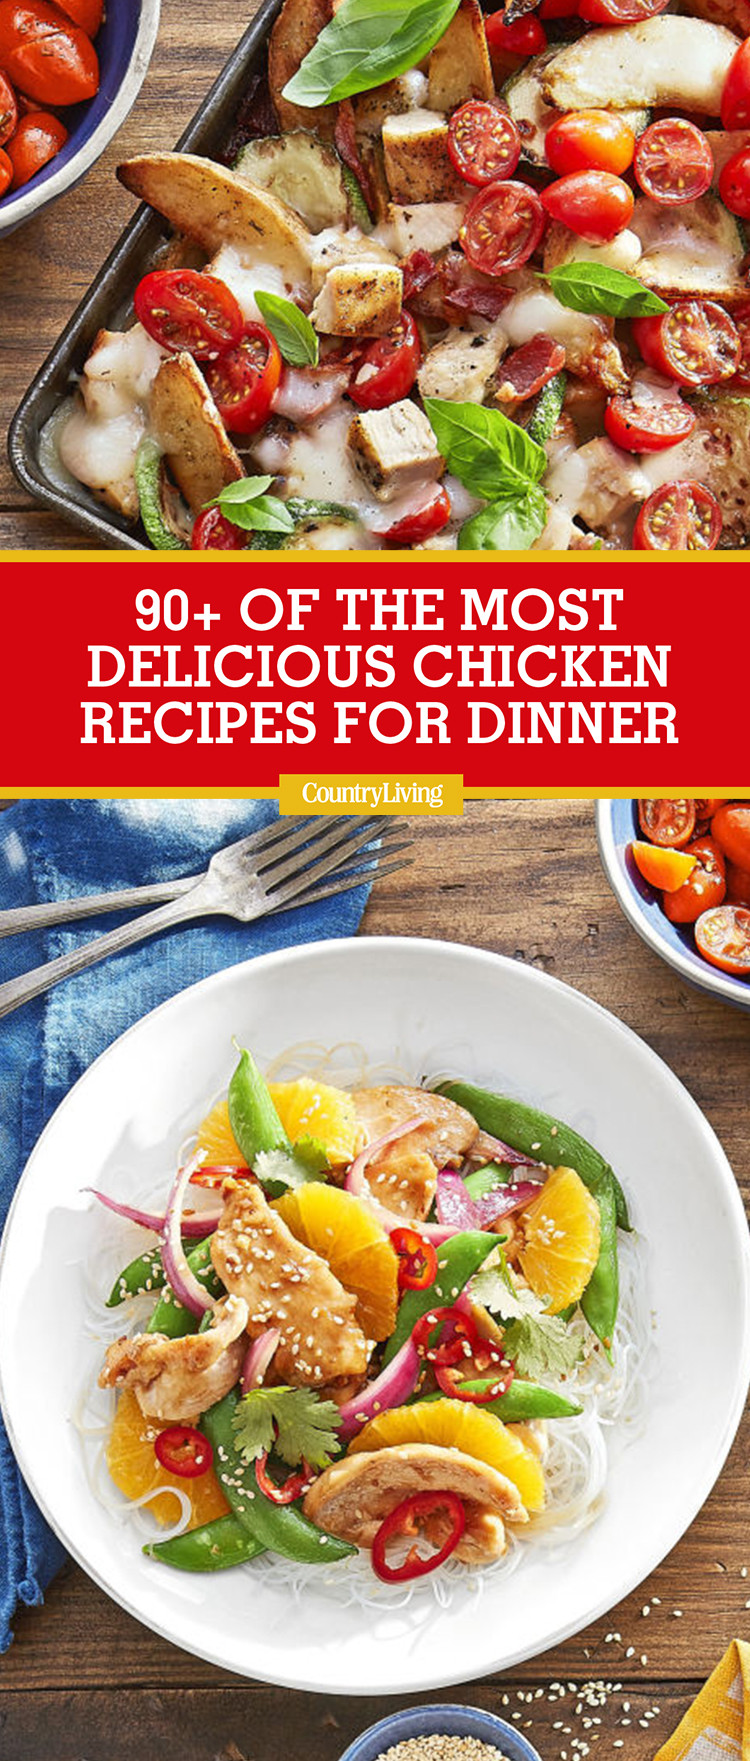 Best Chicken Recipes For Dinner
 93 Best Chicken Dinner Recipes 2017 Top Easy Chicken